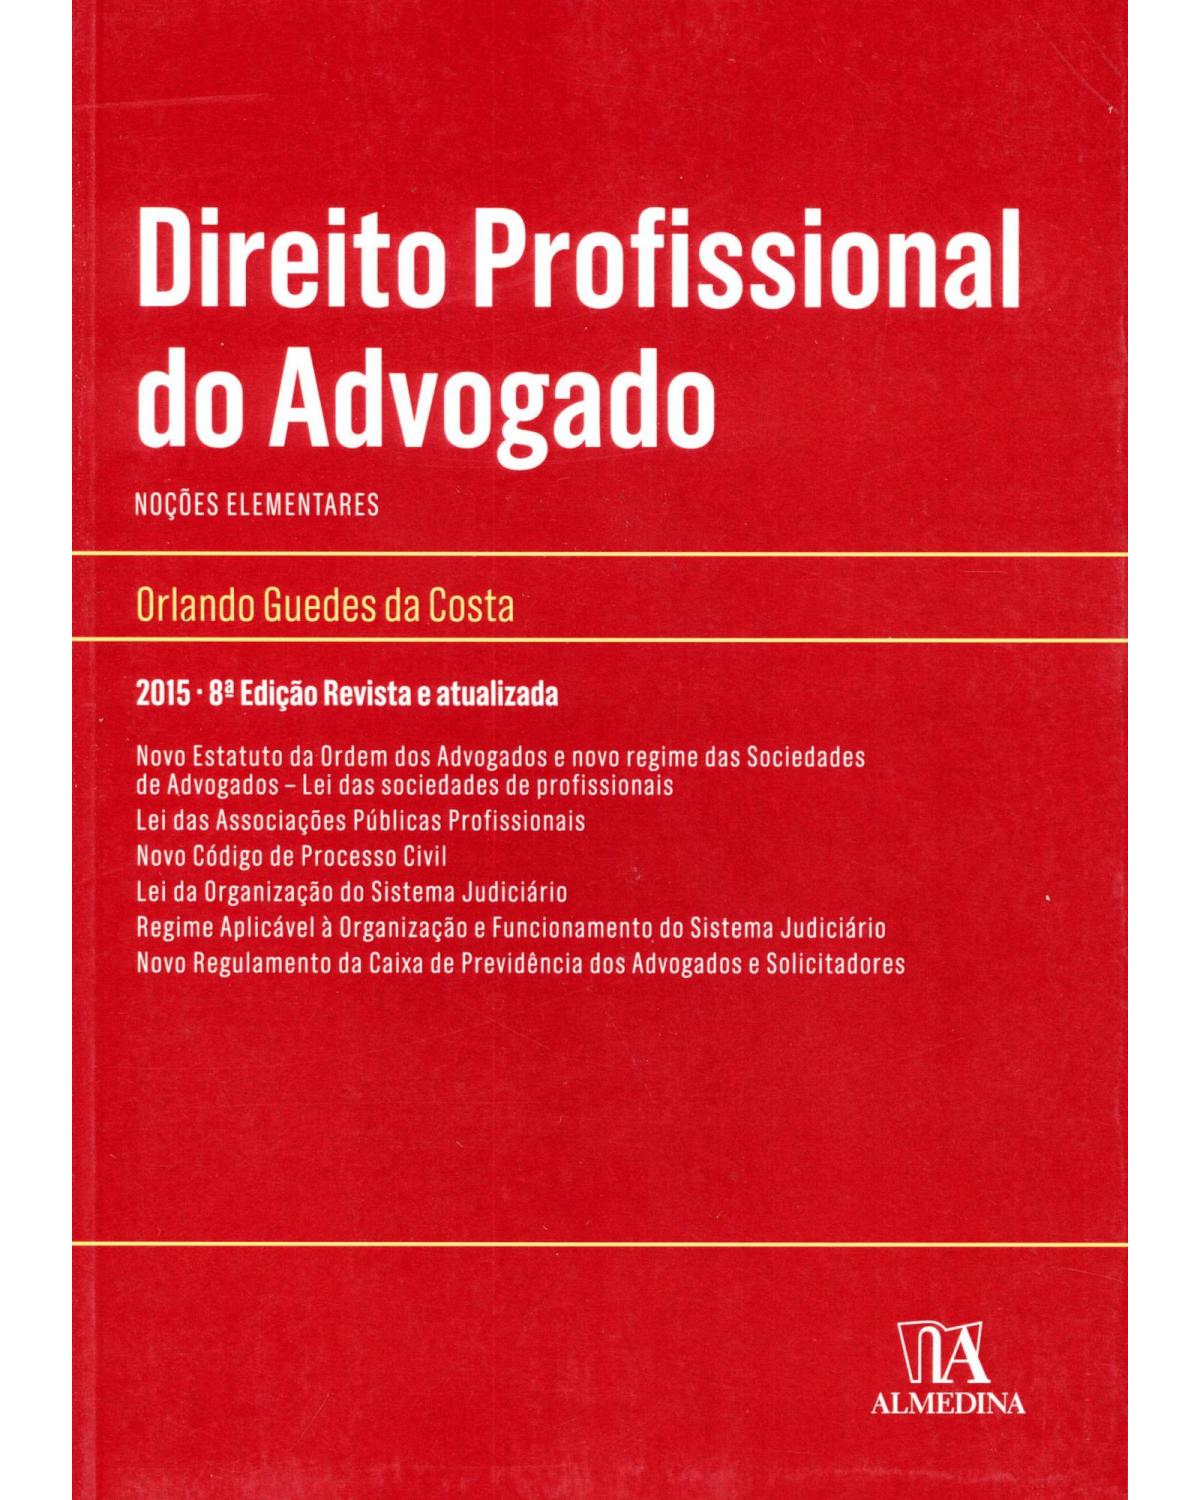 Direito profissional do advogado - noções elementares - 8ª Edição | 2015